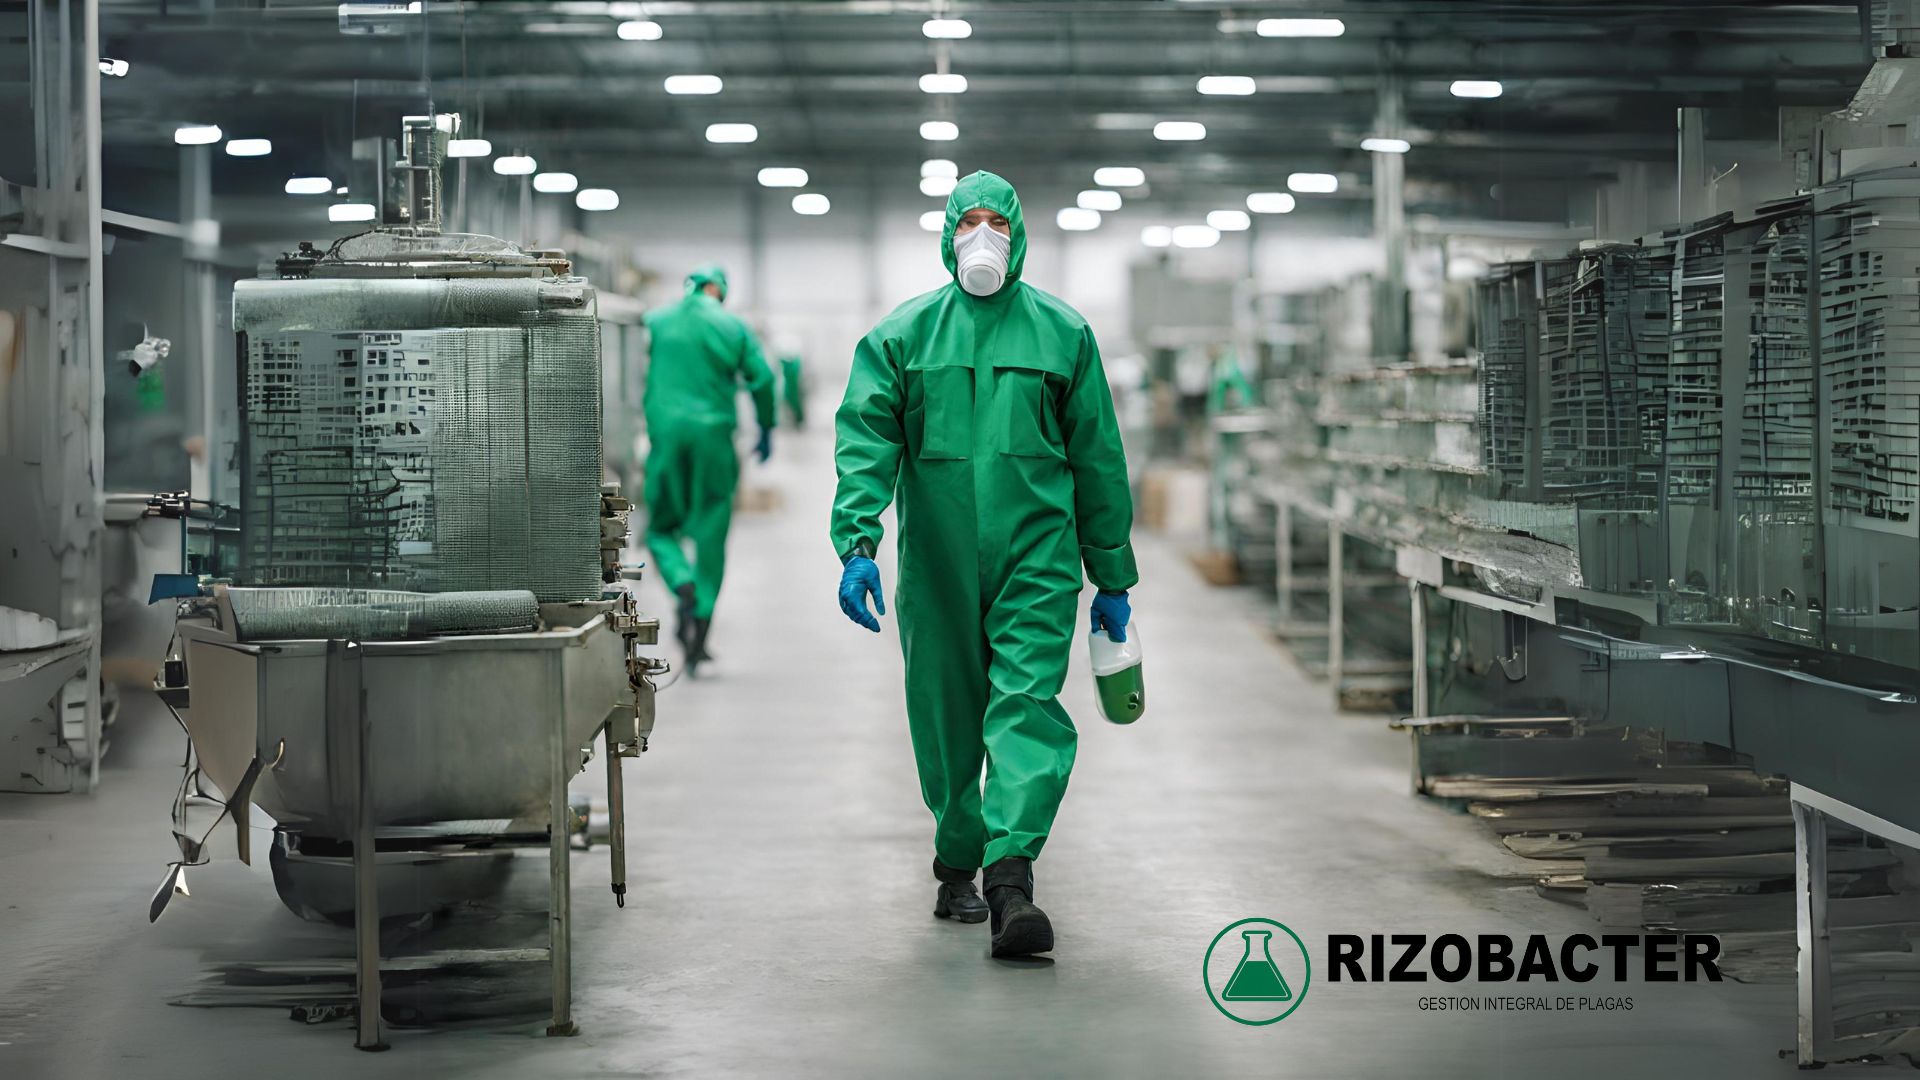 Como expertos en control de plagas para la industria manufacturera, en RIZOBACTER entendemos la importancia de mantener un entorno libre de infestaciones para garantizar la calidad de los productos, la seguridad alimentaria y el cumplimiento de las normativas sanitarias.